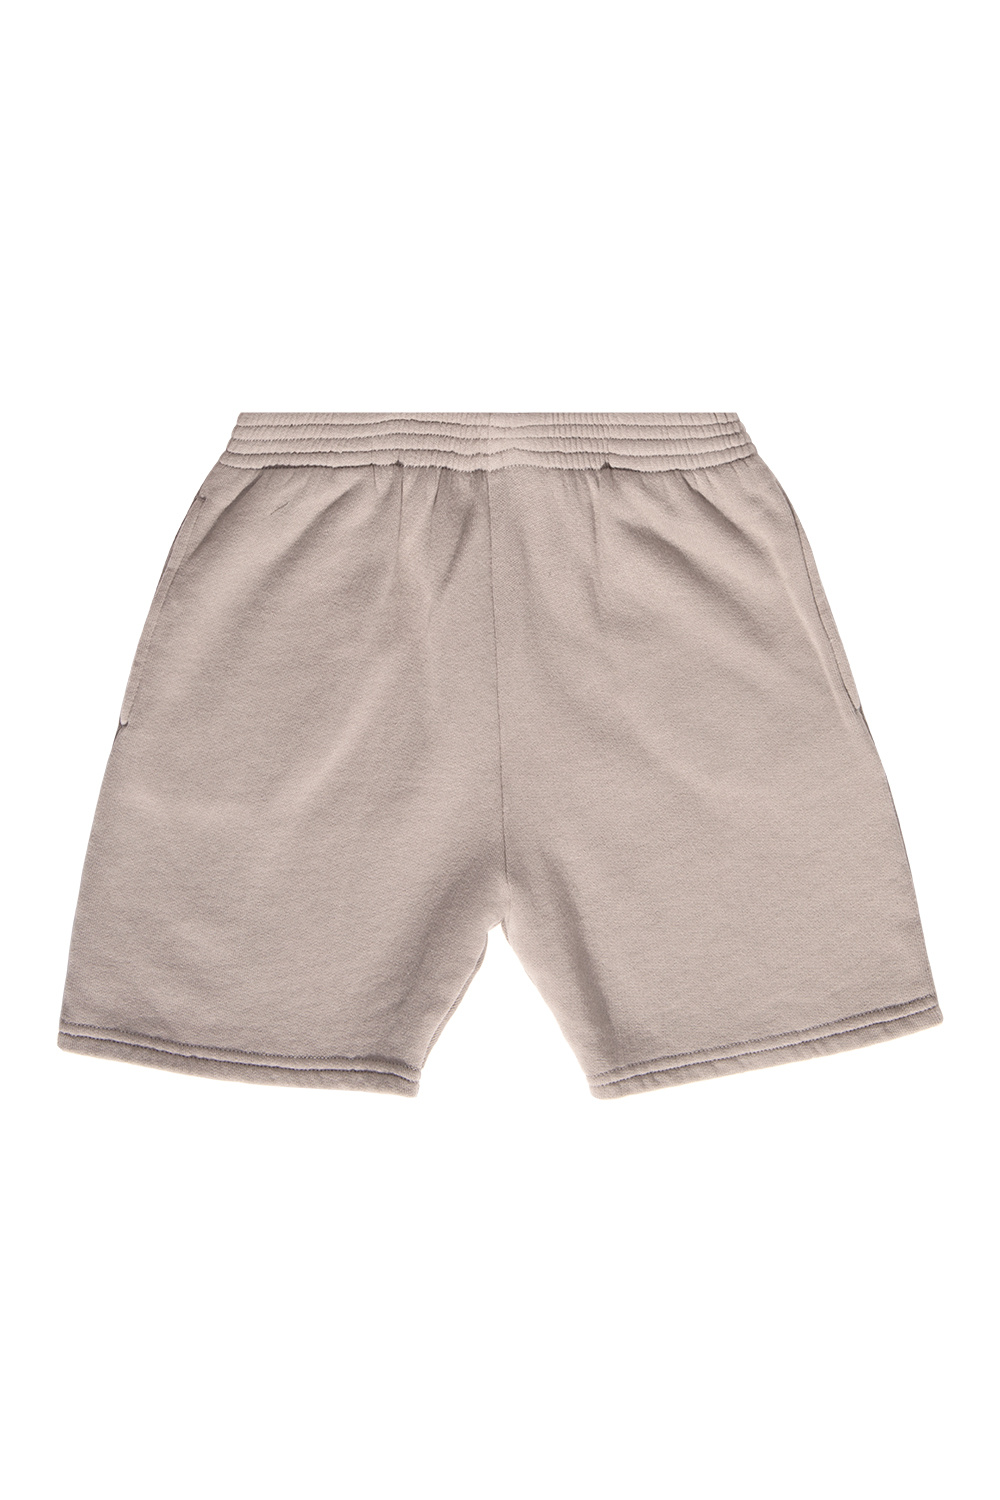 Balenciaga Kids Cotton off shorts